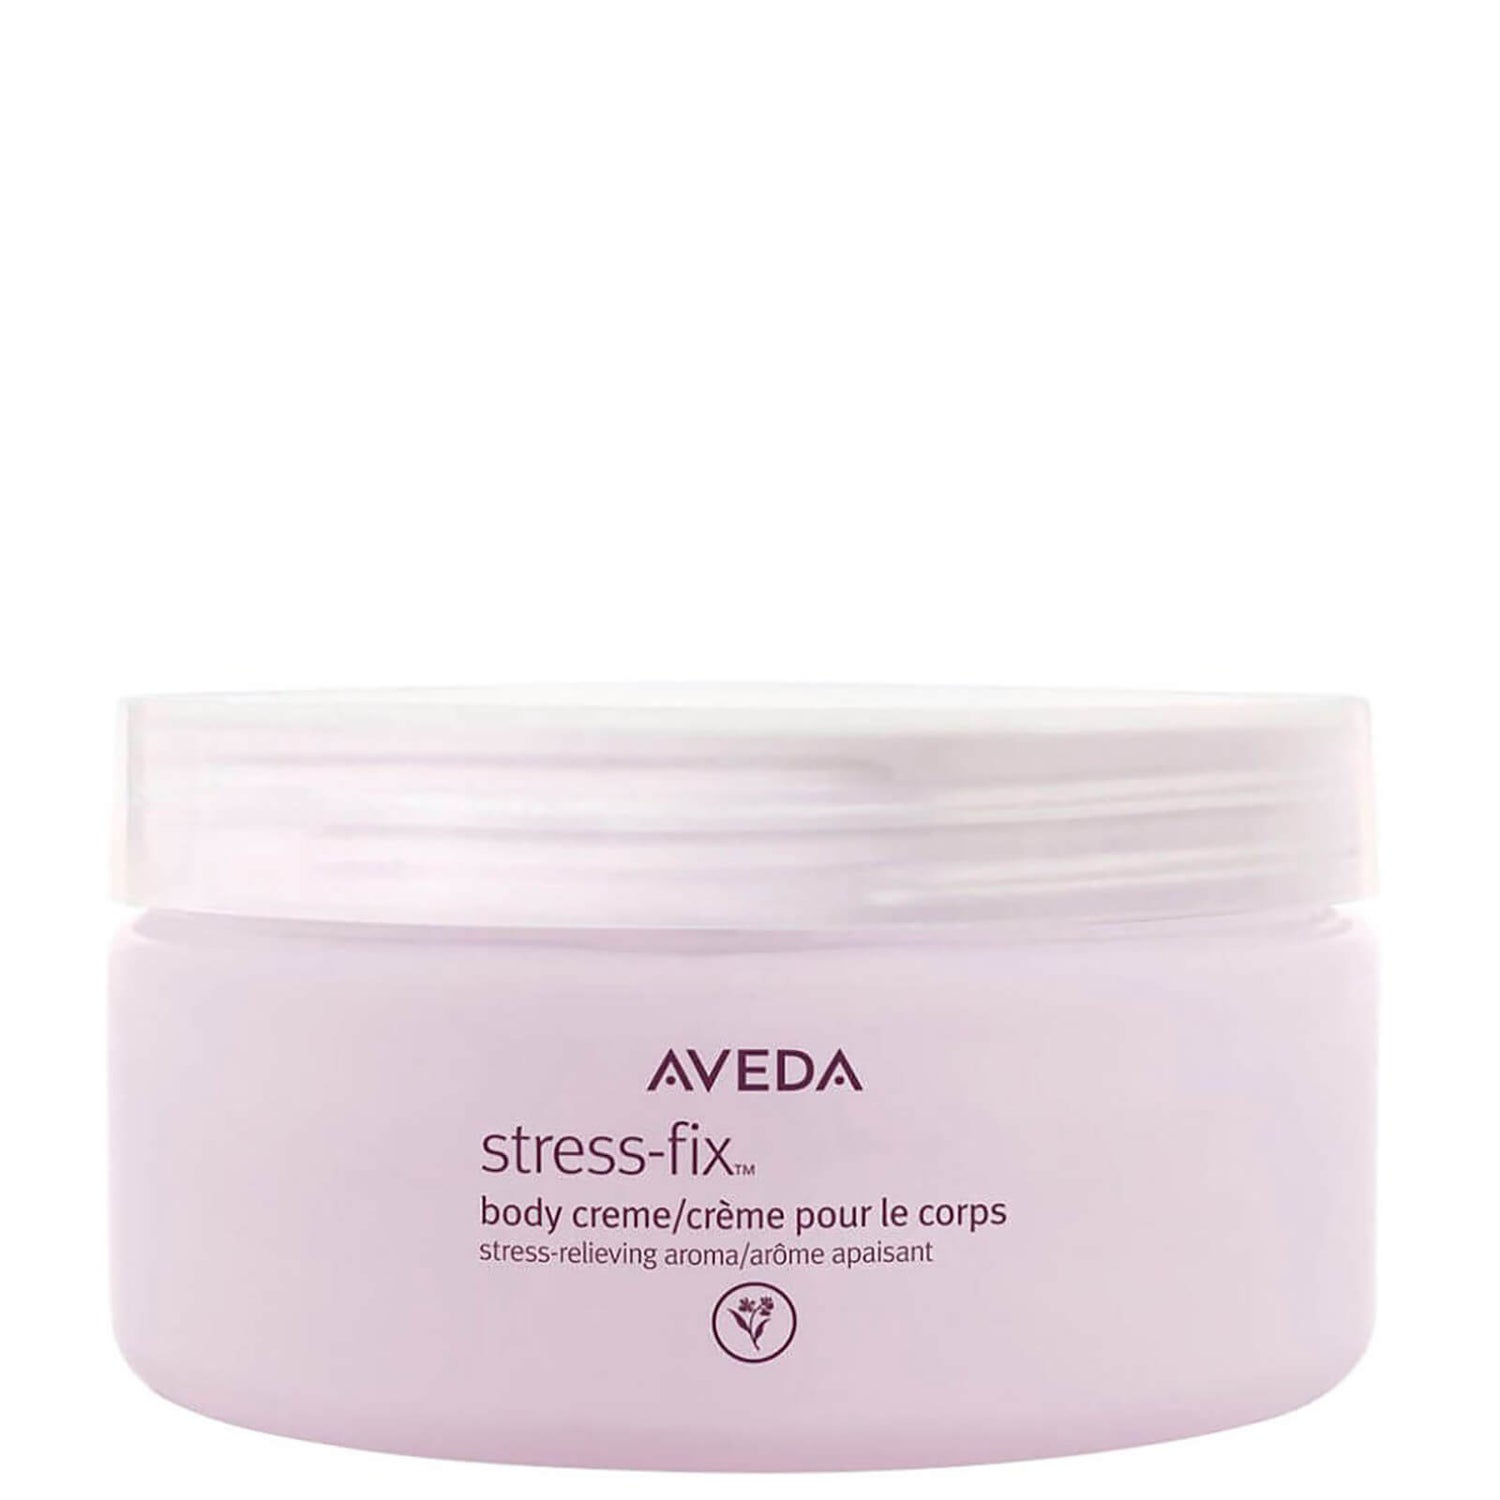 Aveda Stress-Fix Crema Corpo 200 ml